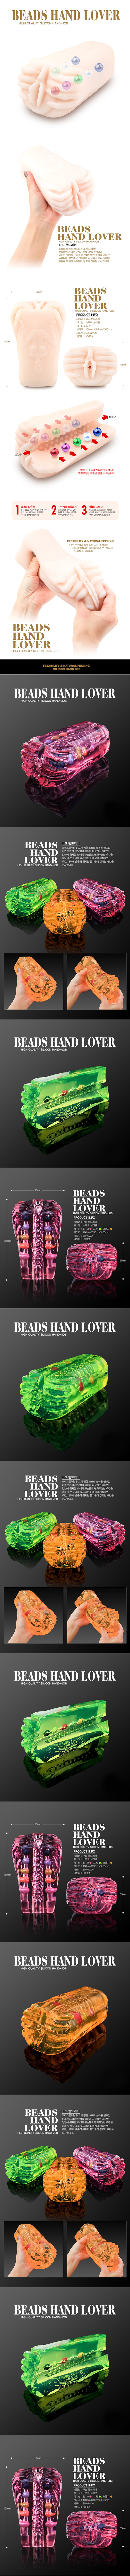 비즈 핸드 러버(Beads Hand Lover)